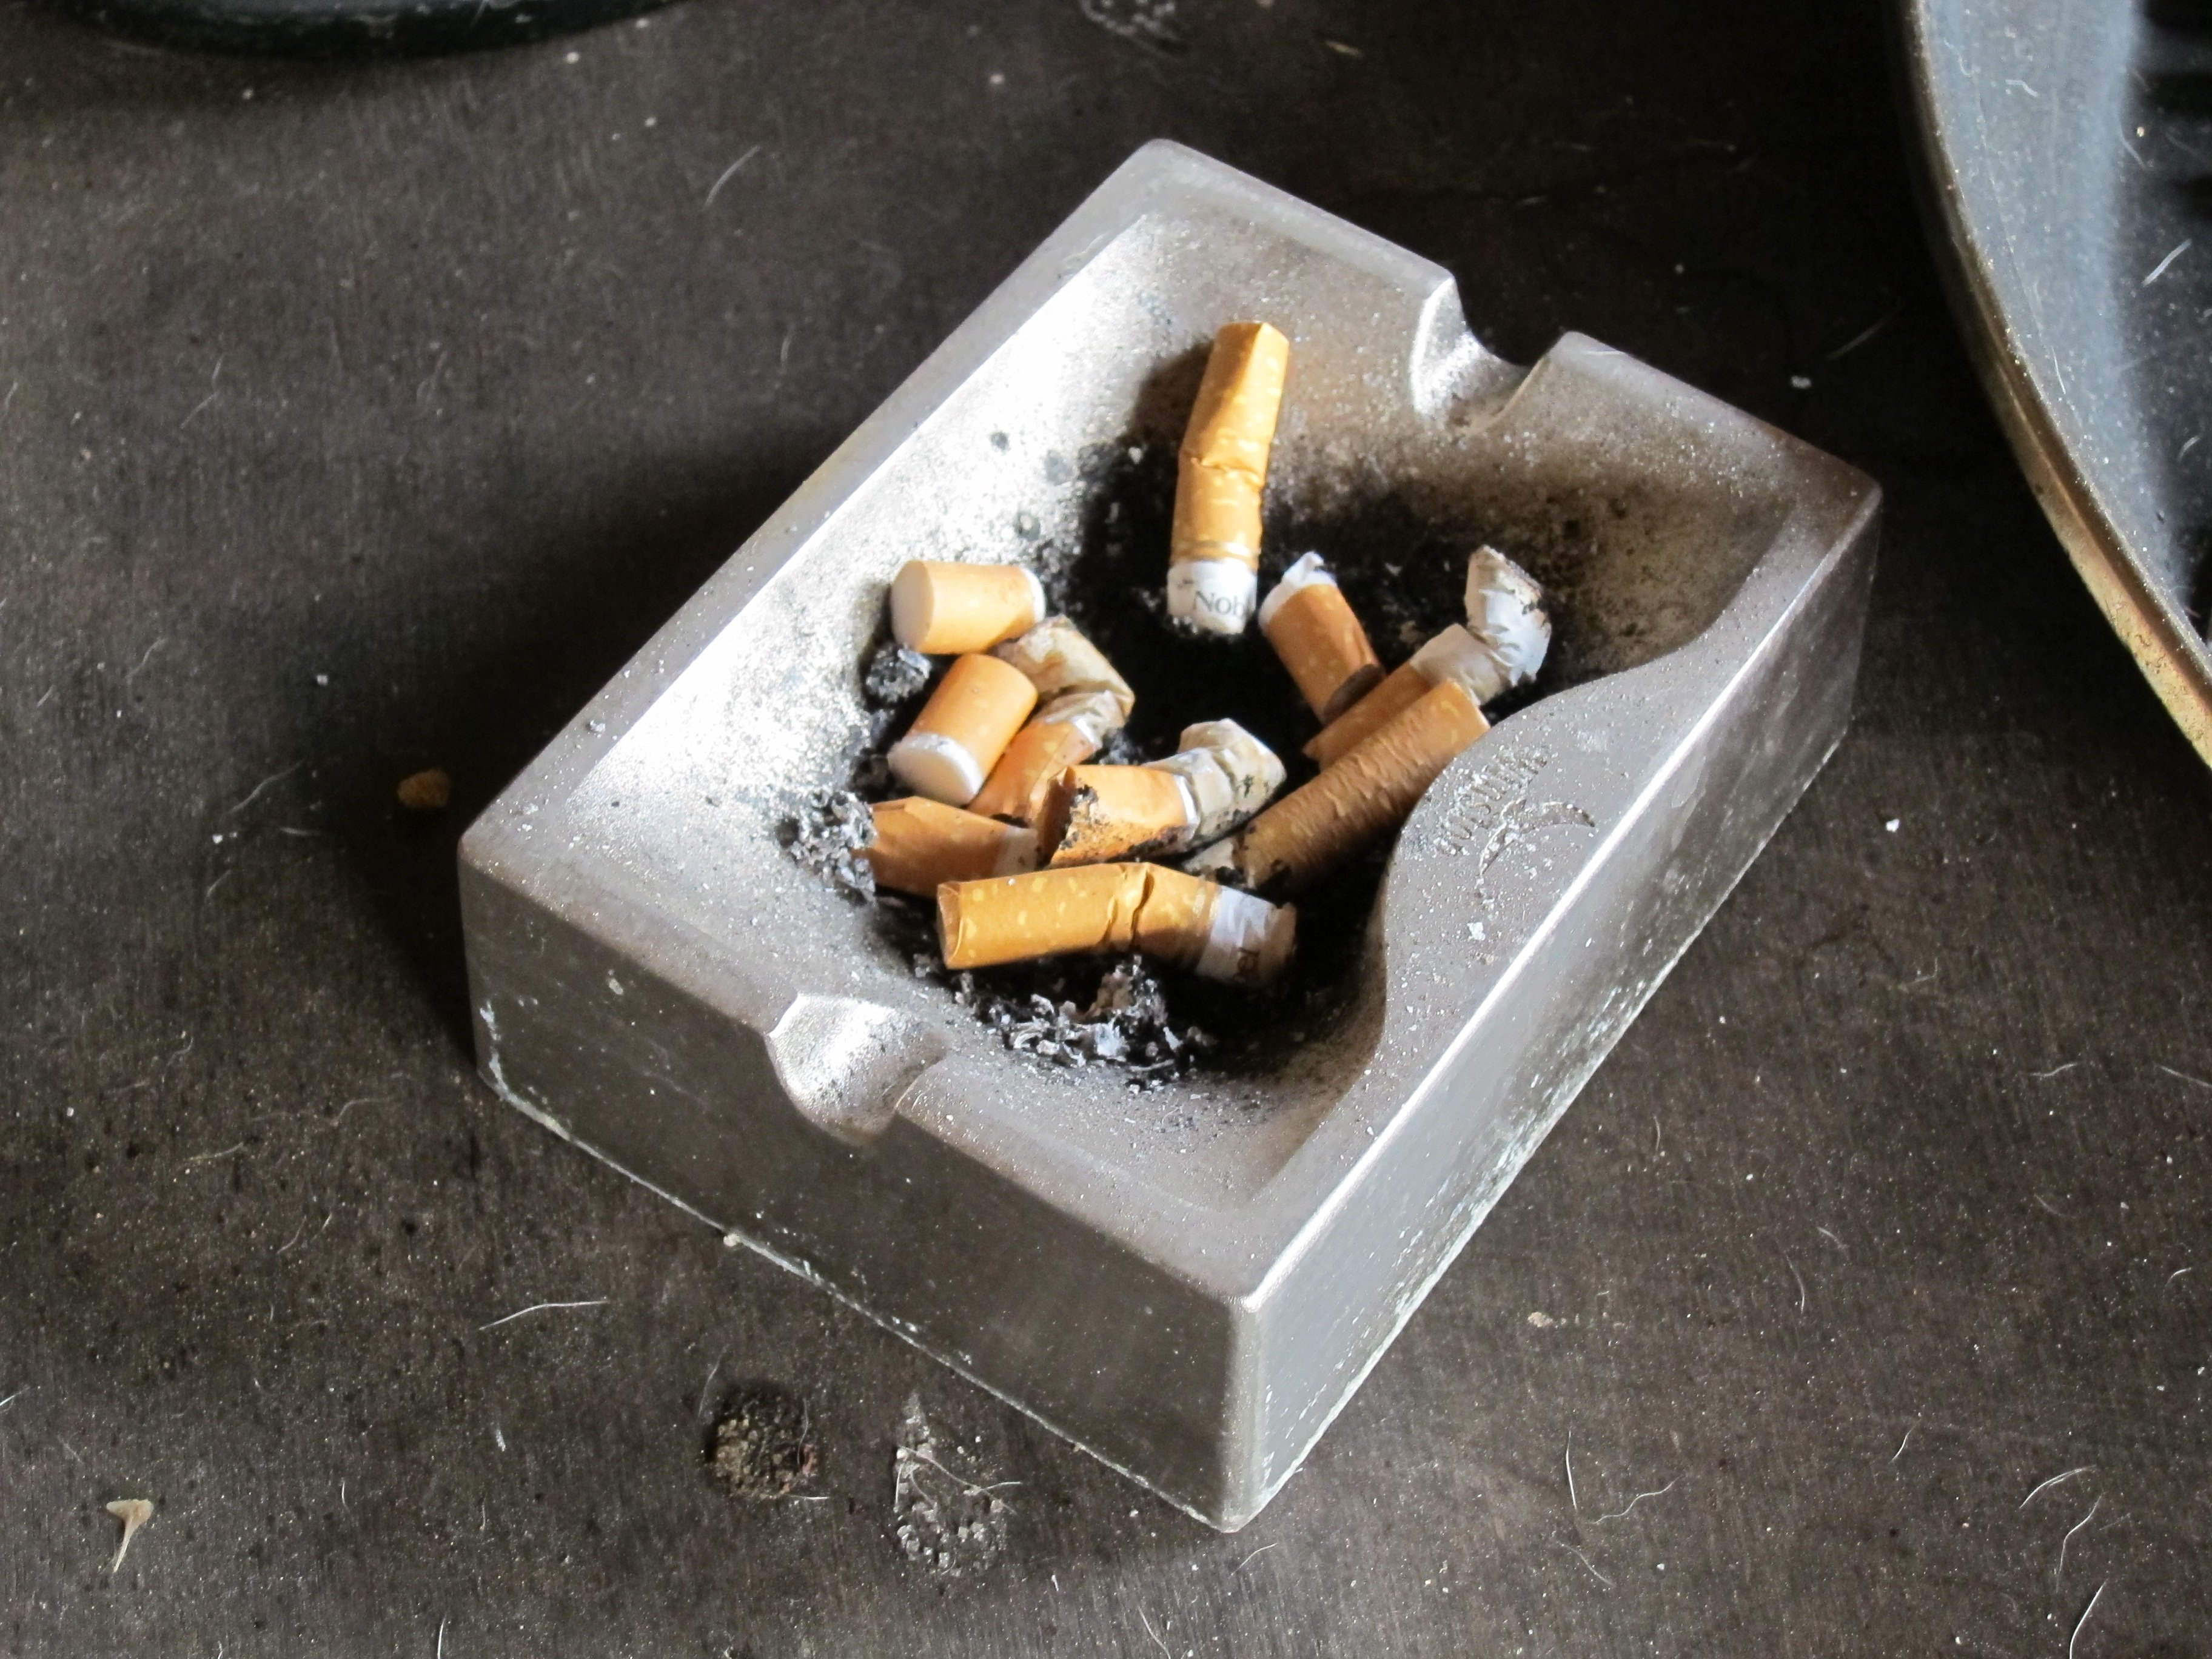 Alerta: els fumadors poden propagar encara més la Covid-19